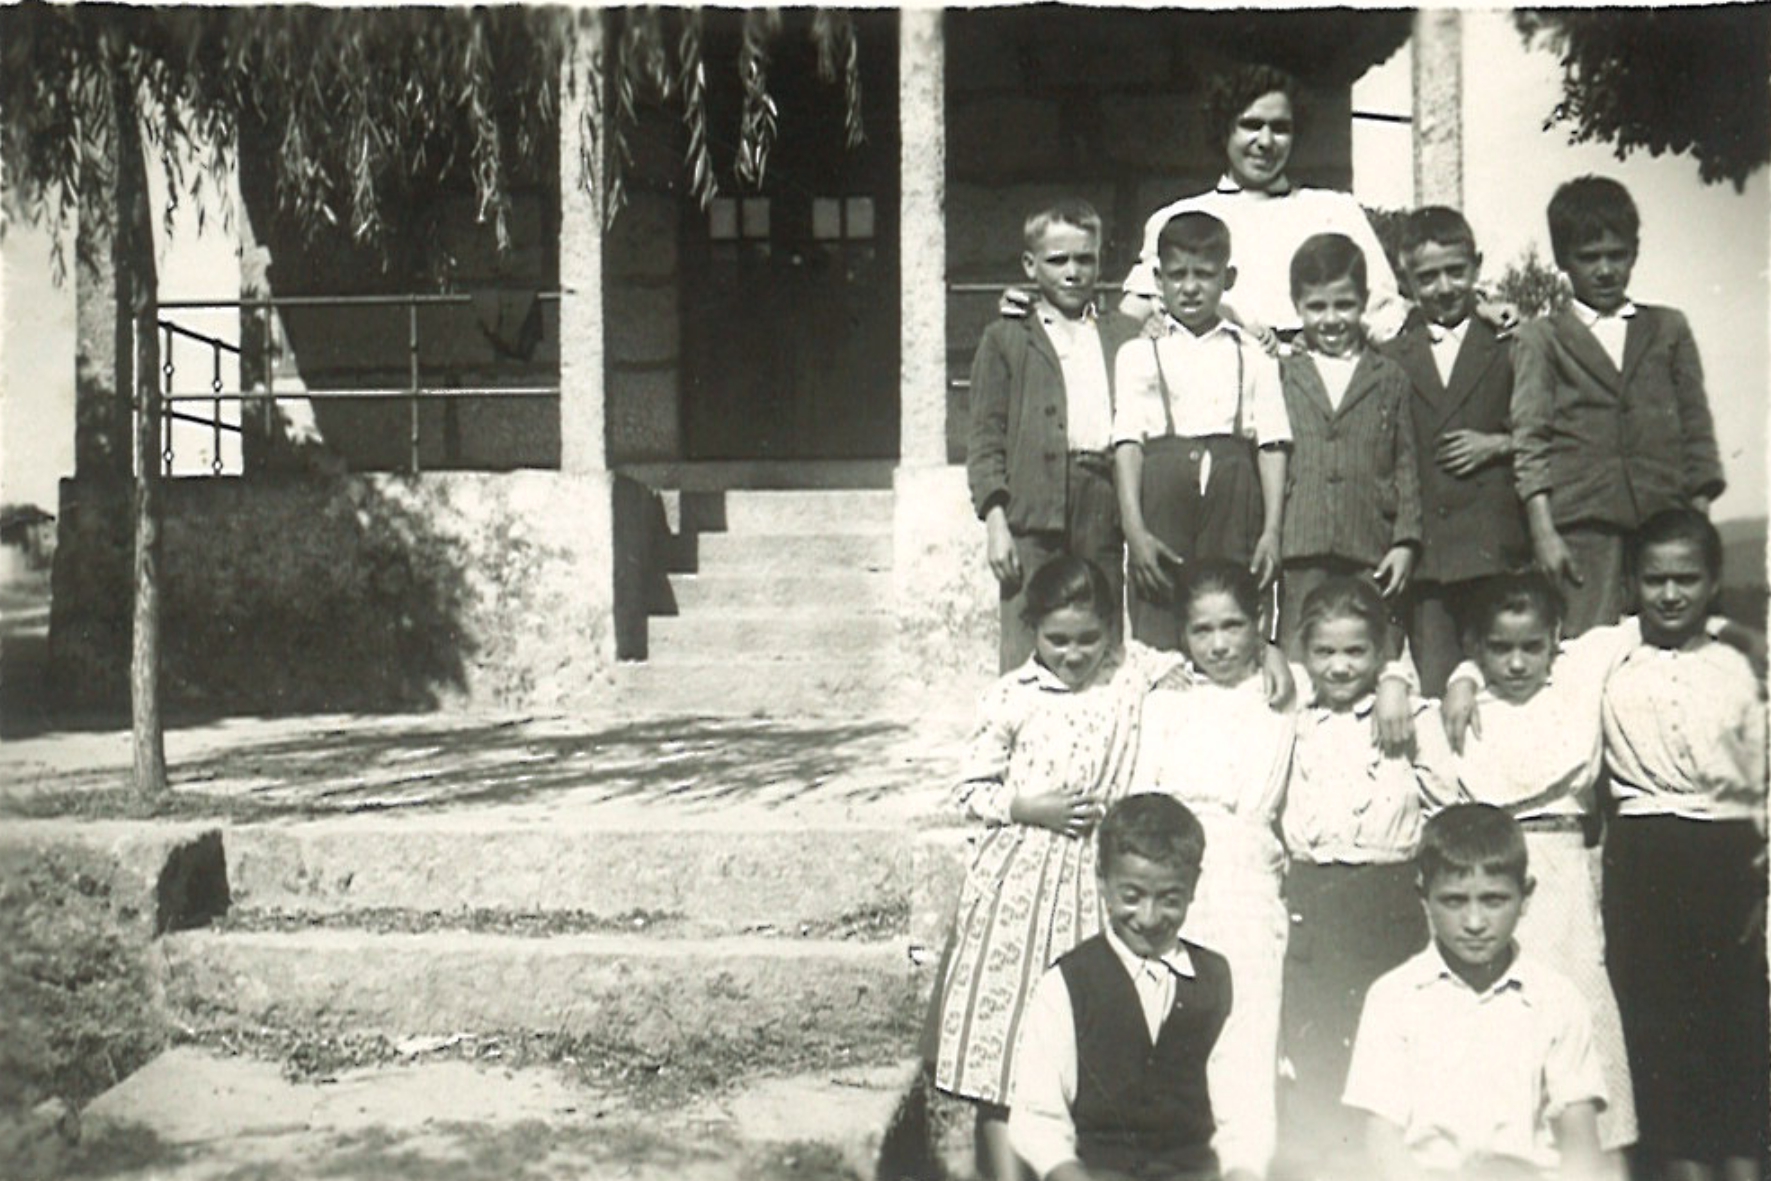 Rural school (1950)